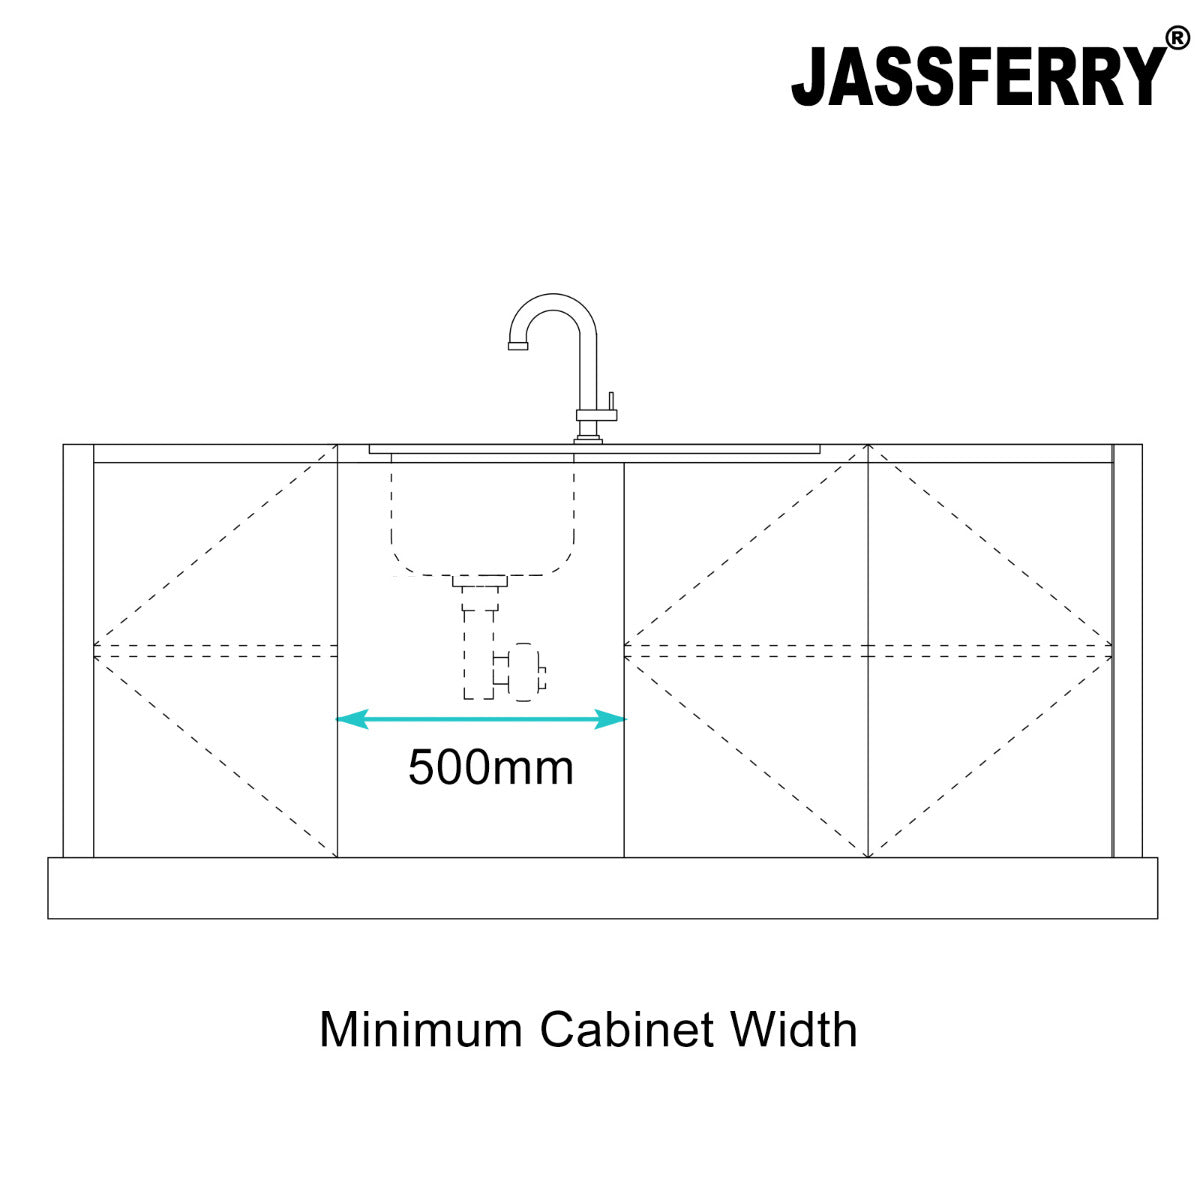 JassferryJASSFERRY Handcrafted Stainless Steel Kitchen Sink Inset 1 Bowl Righthand DrainerKitchen Sinks